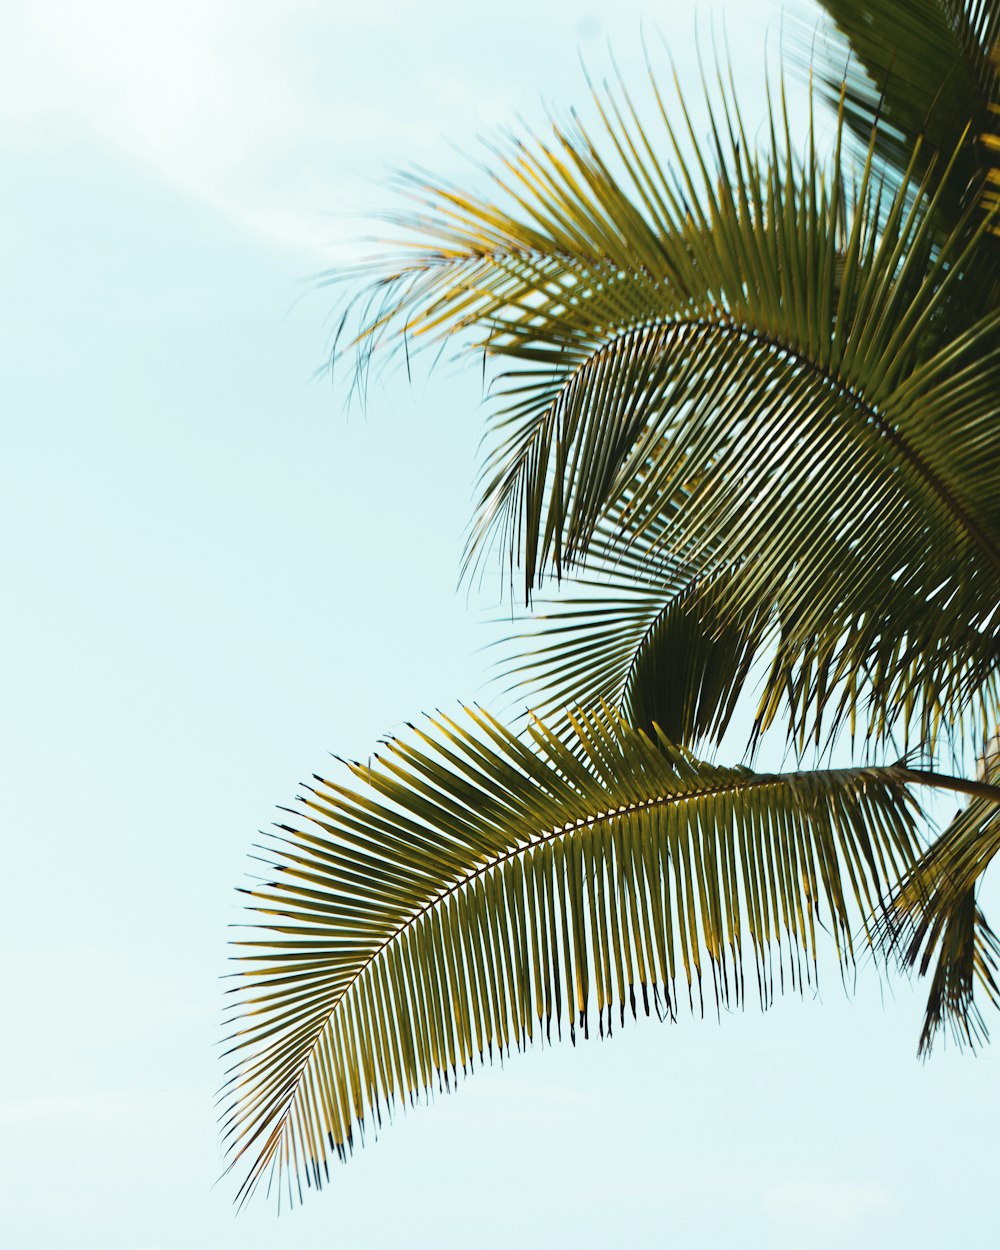 Eine Palme mit blauem Himmel im Hintergrund